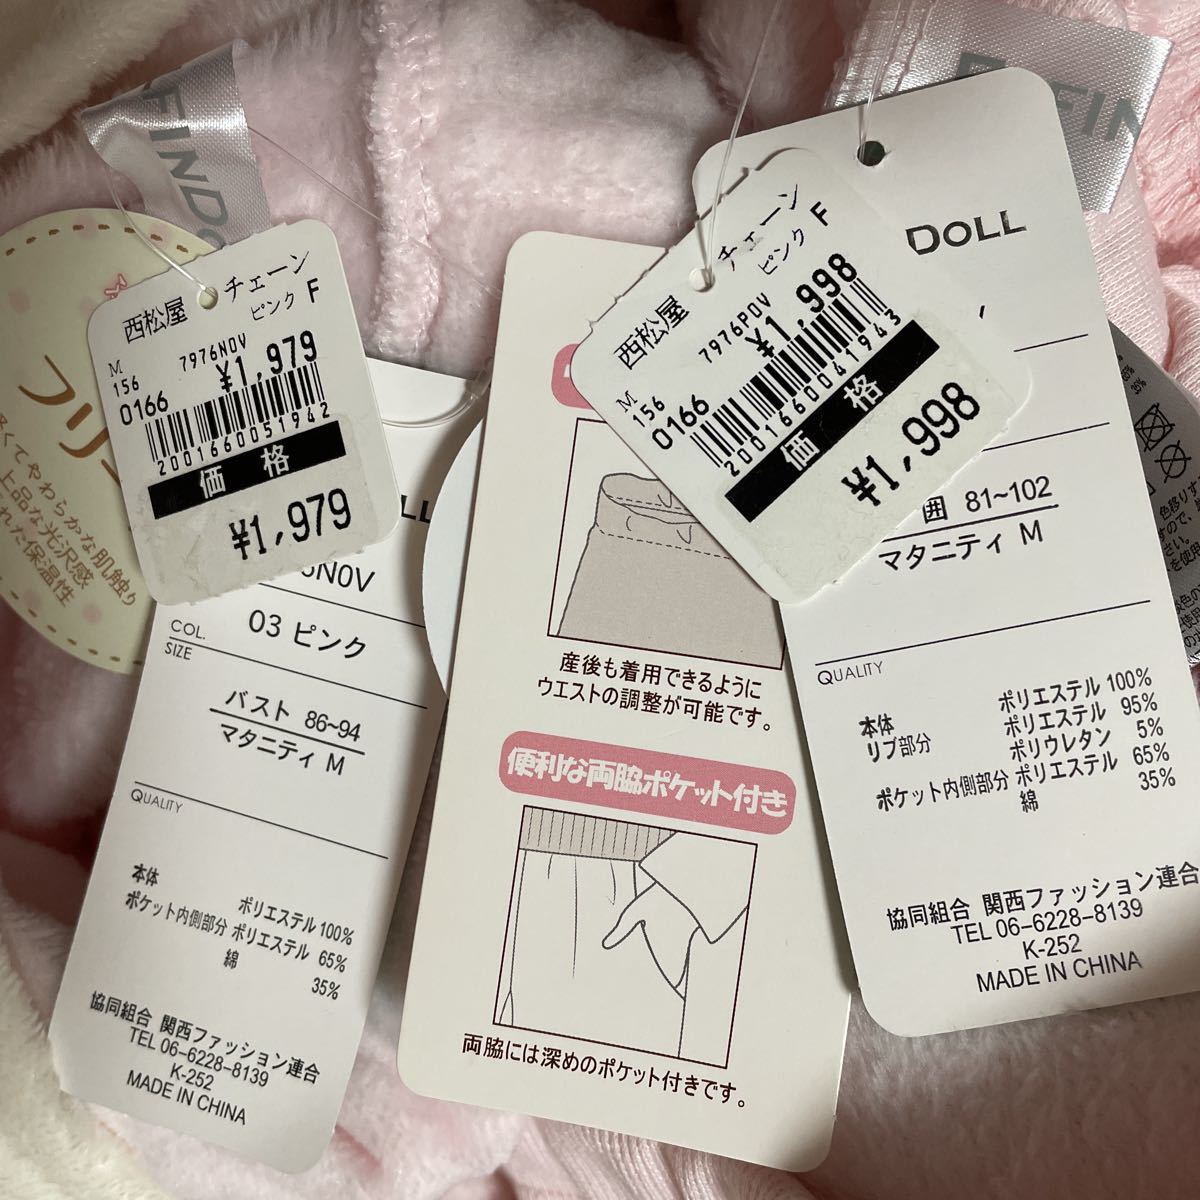  новый товар  3997  йен  ...  пижама   M  розовый   2шт.   комплект    бирка есть  ...  неиспользуемый   норка  ... венок    был      ... подготовка   ...  комната  ...  комната ...